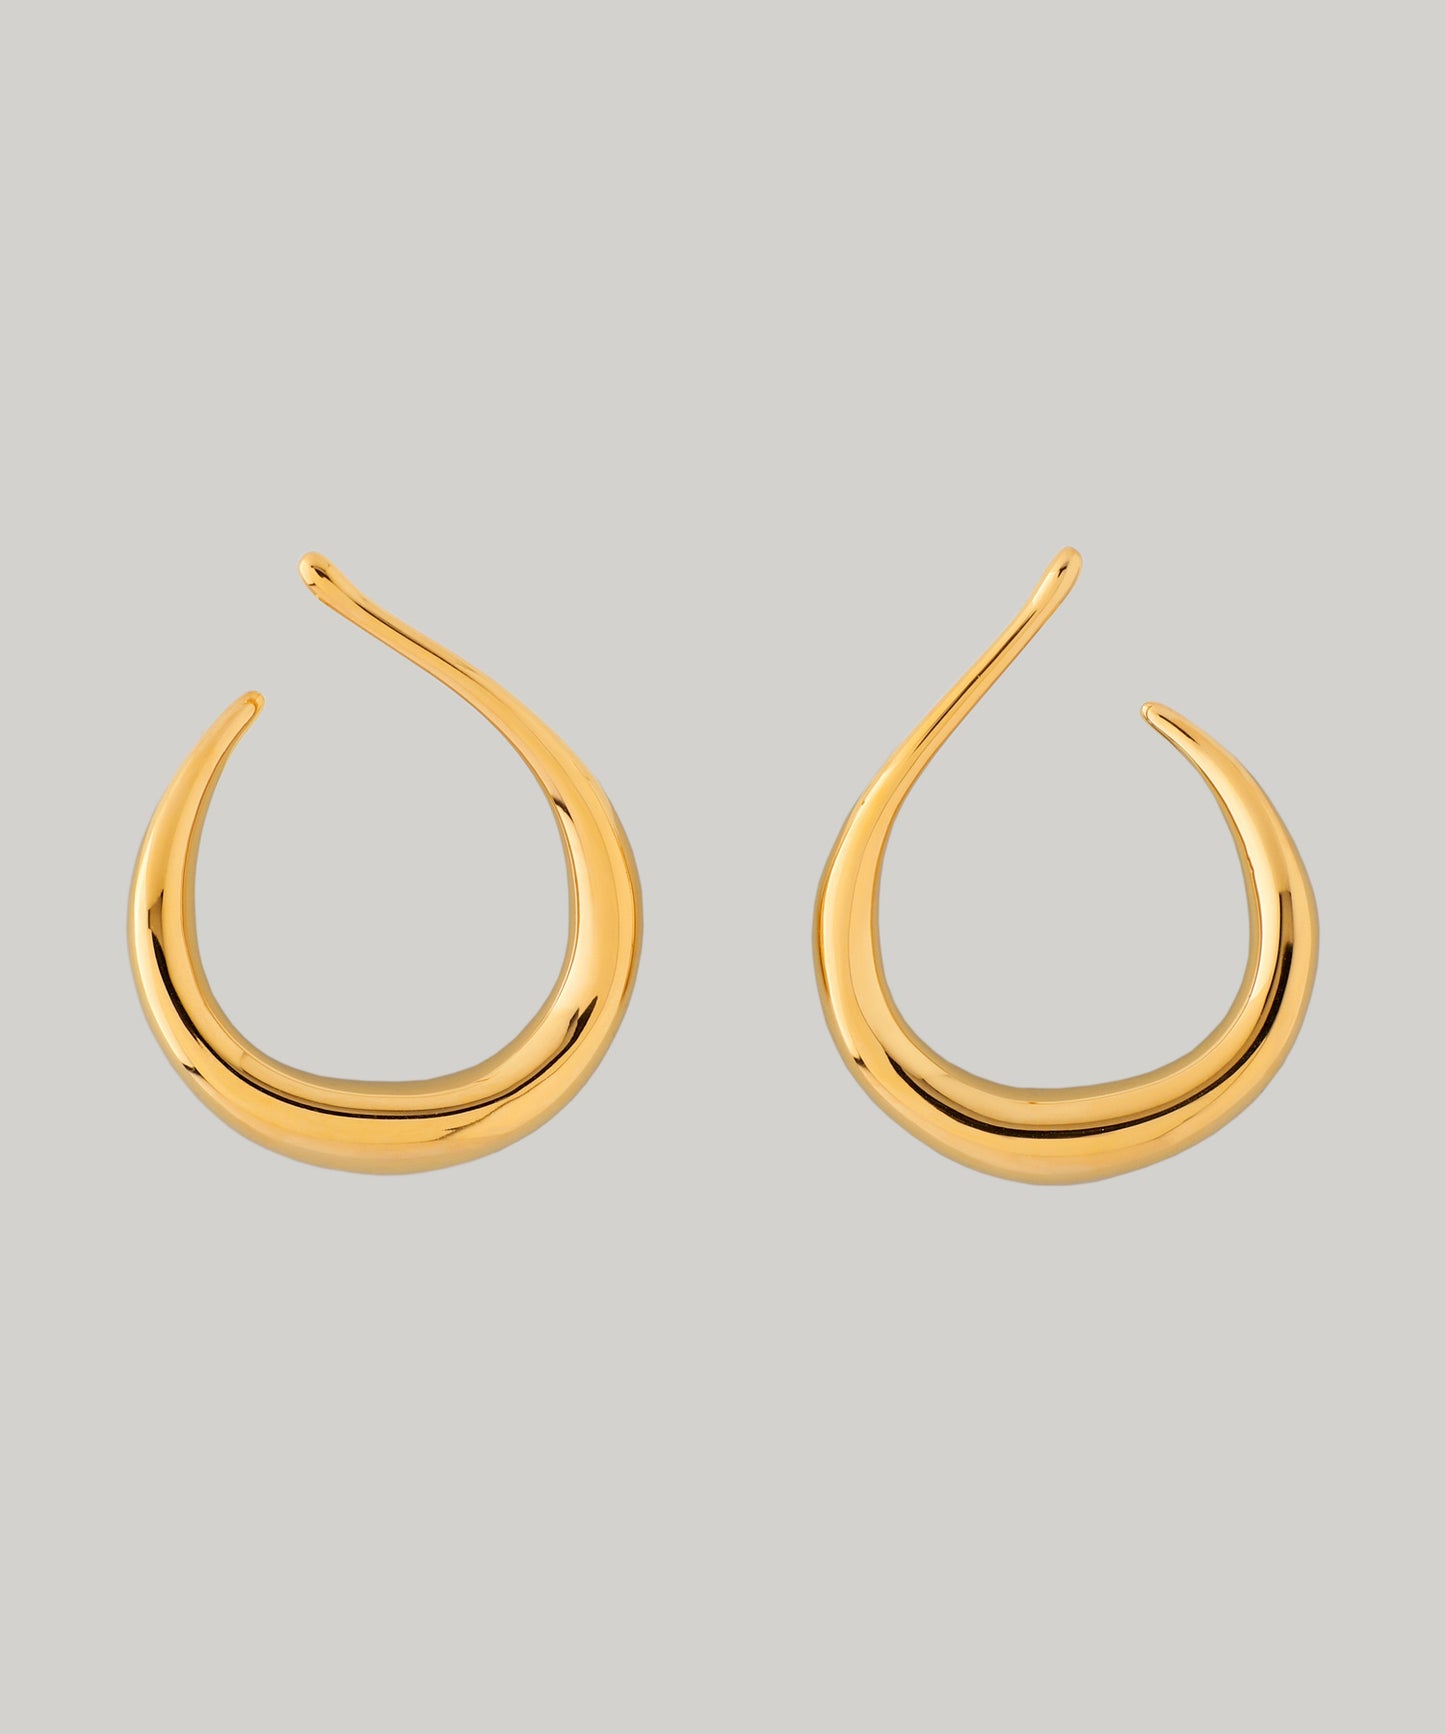 【Stainless Seel IP】 Drop Line Earrings